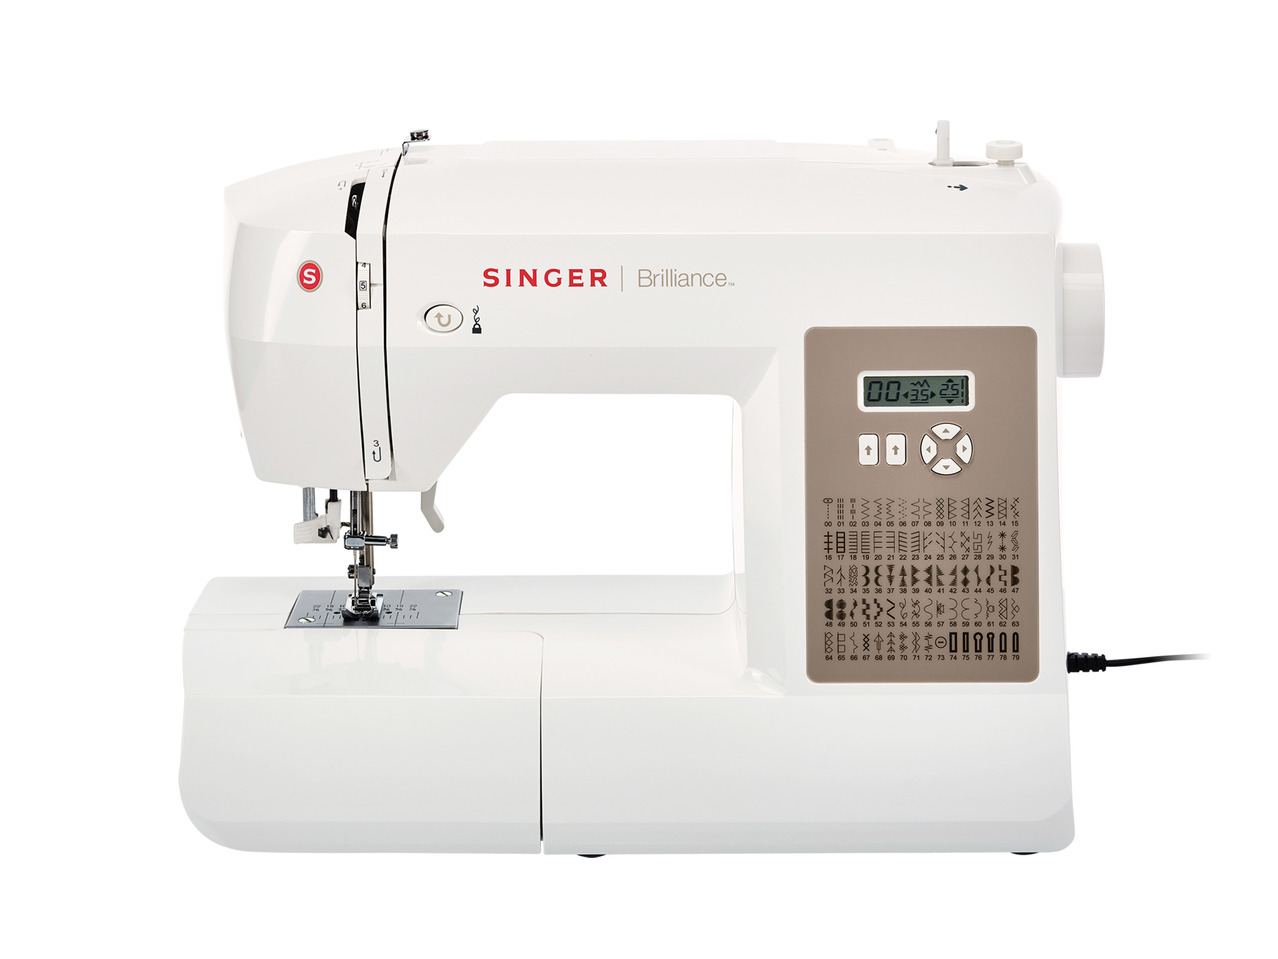 Singer Brilliance™ Sewing Machine1